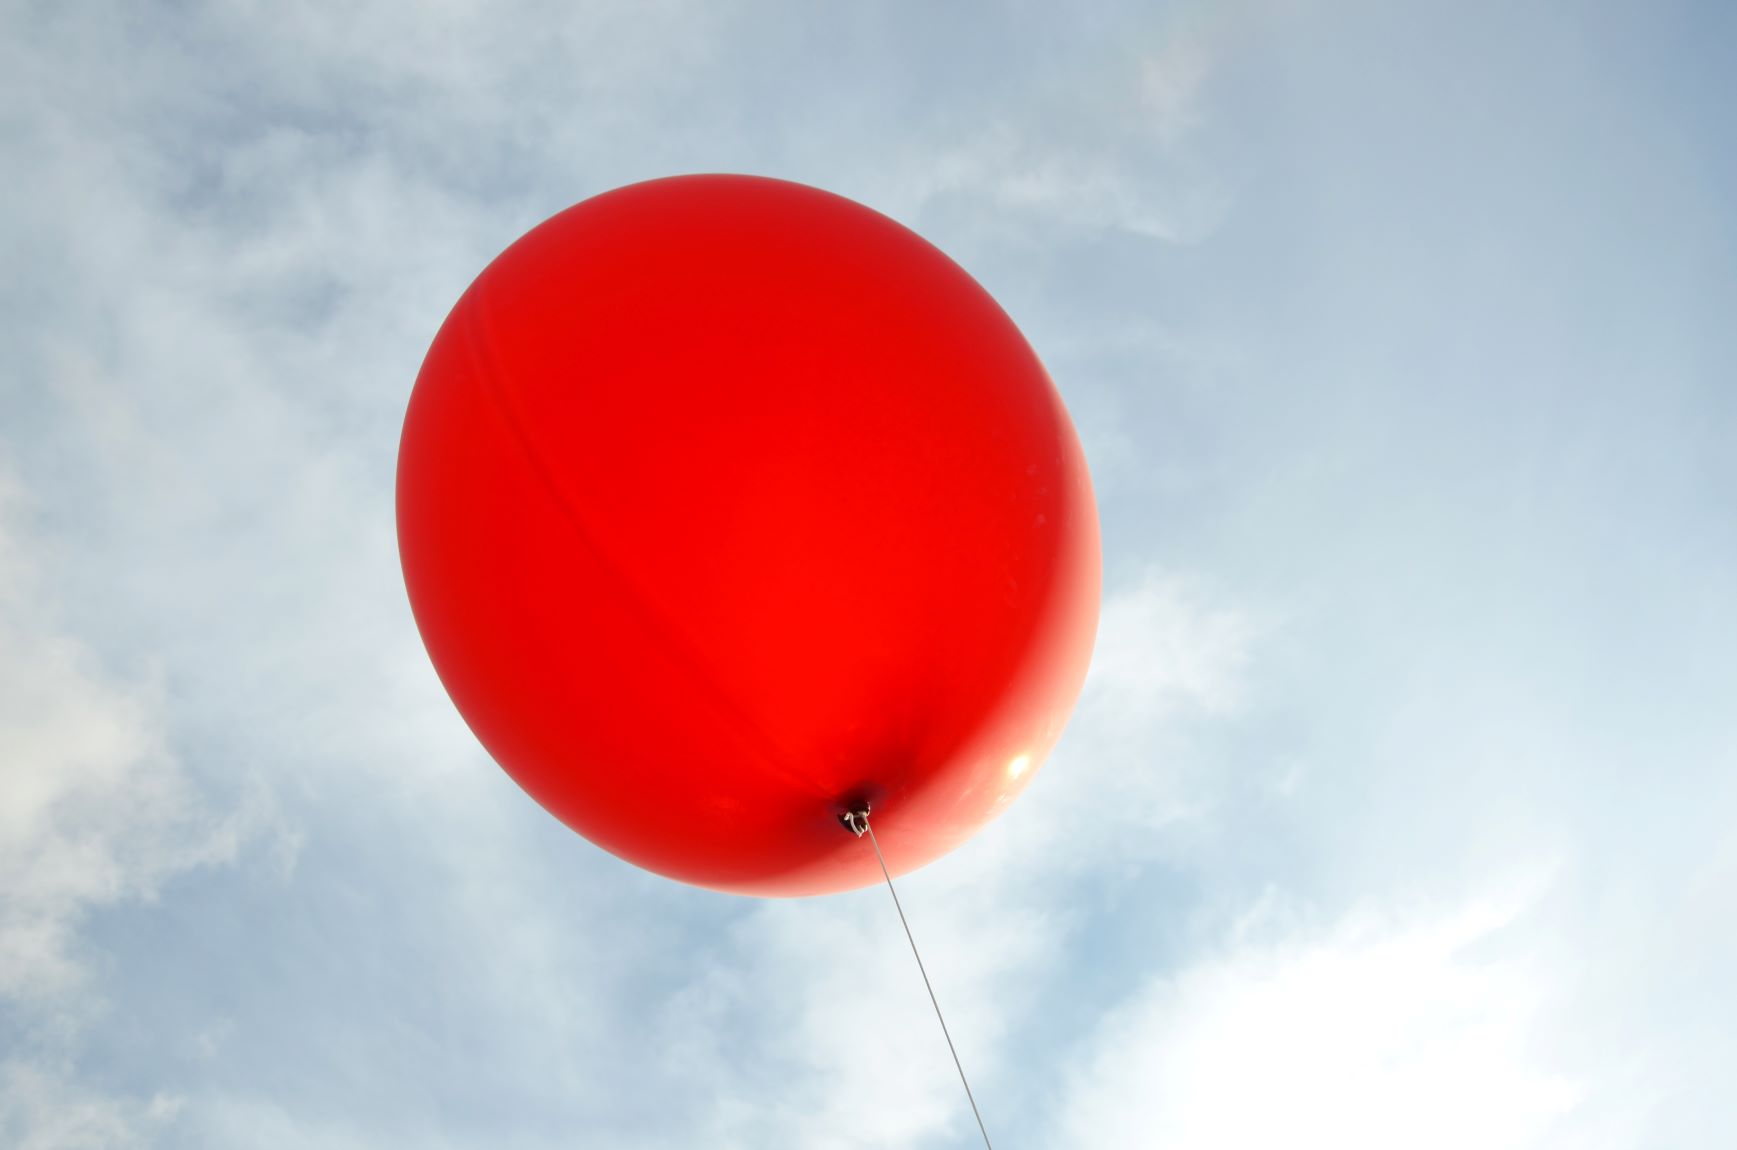 Punainen jätti-ilmapallo vaaleansininen taivasta taustanaan.